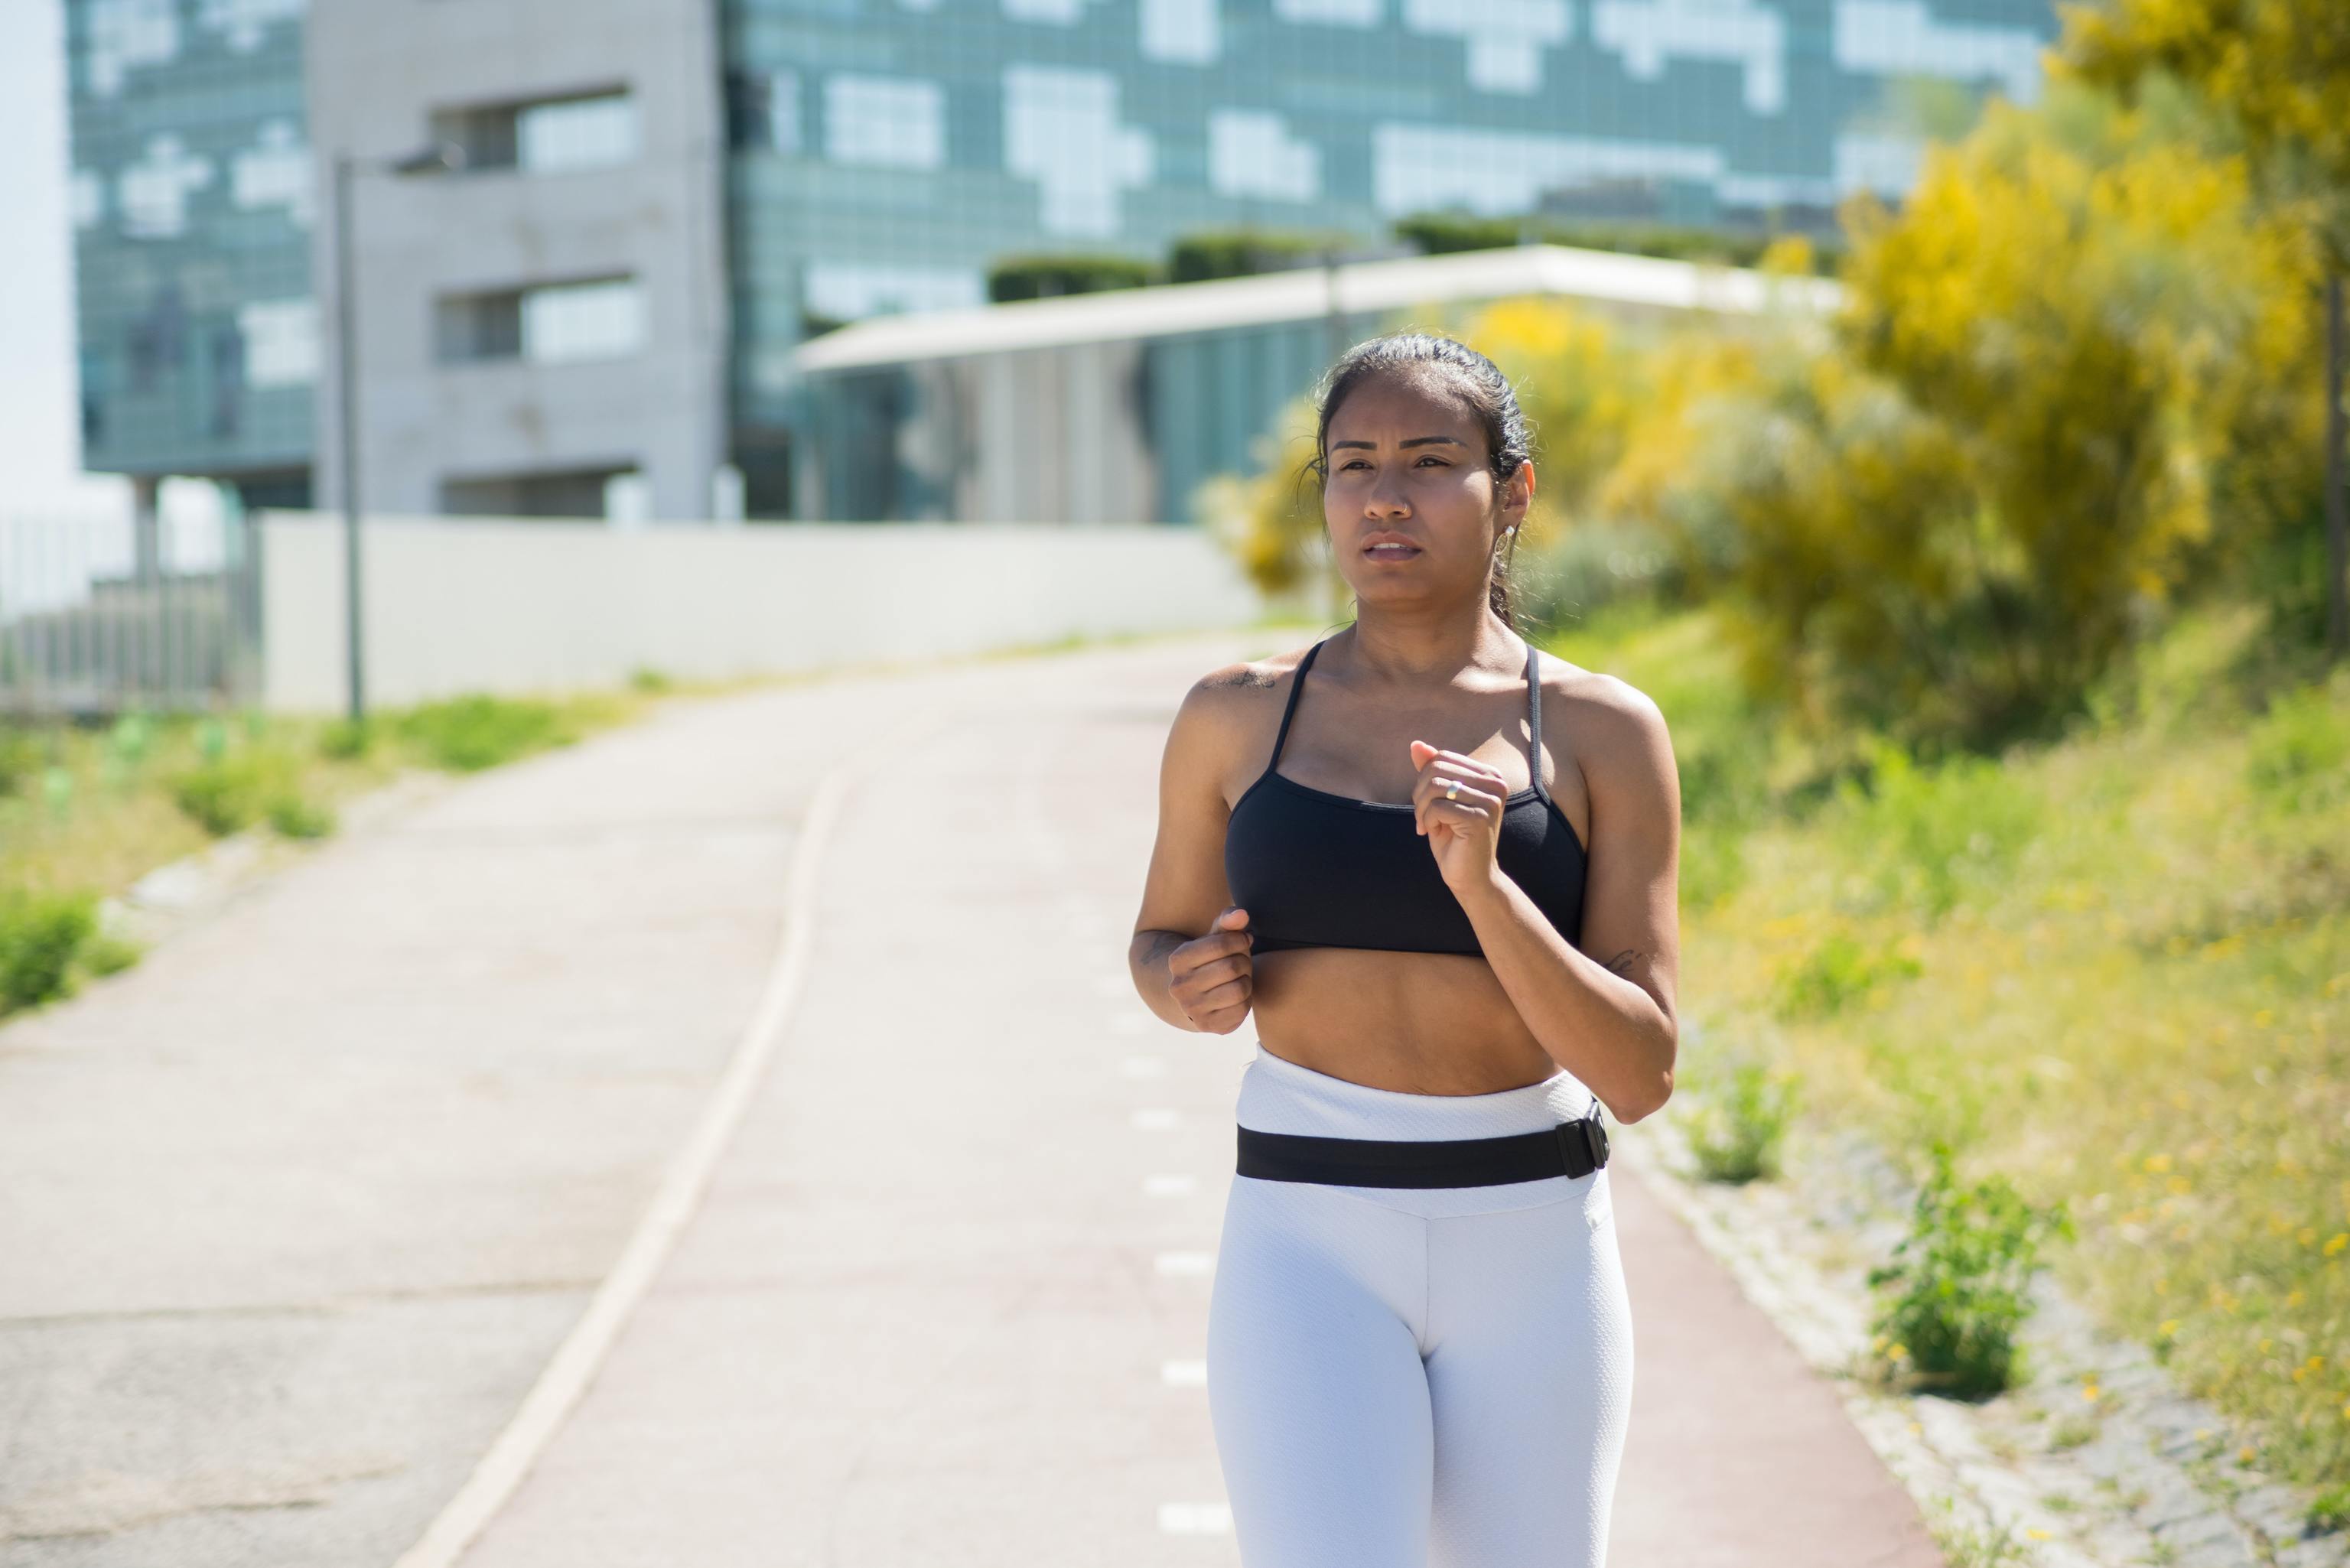 El ejercicio y tu organismo — Los beneficios de hacer ejercicio